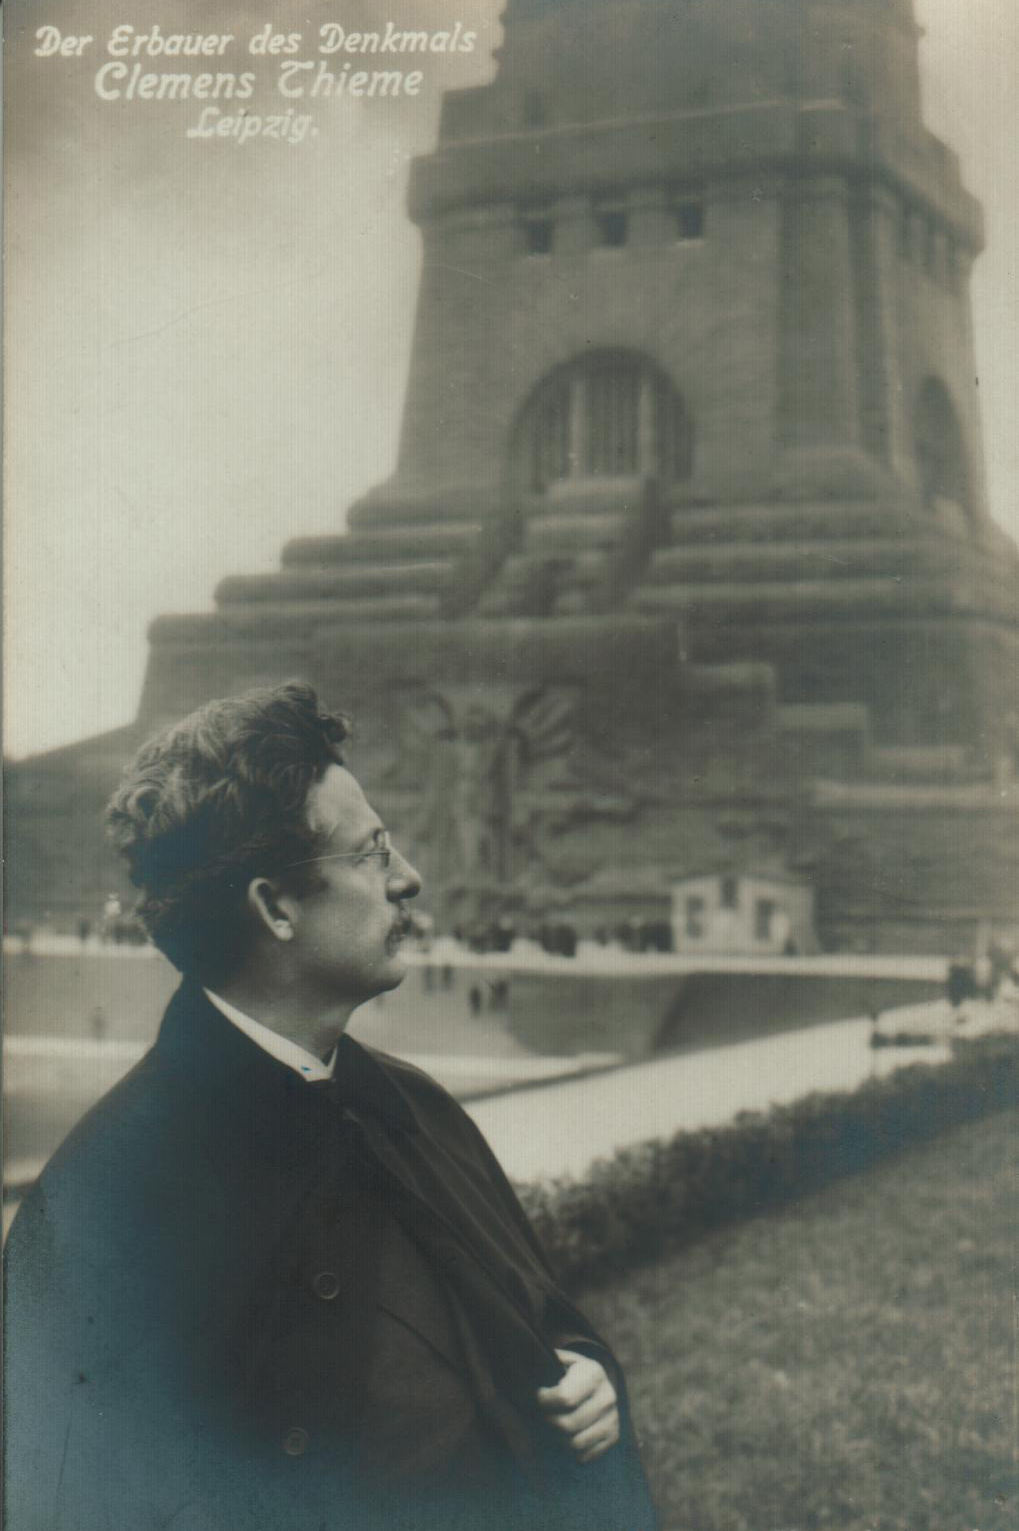 Ansichtskarte mit Clemens Thieme vor dem Völkerschlachtdenkmal, um 1925